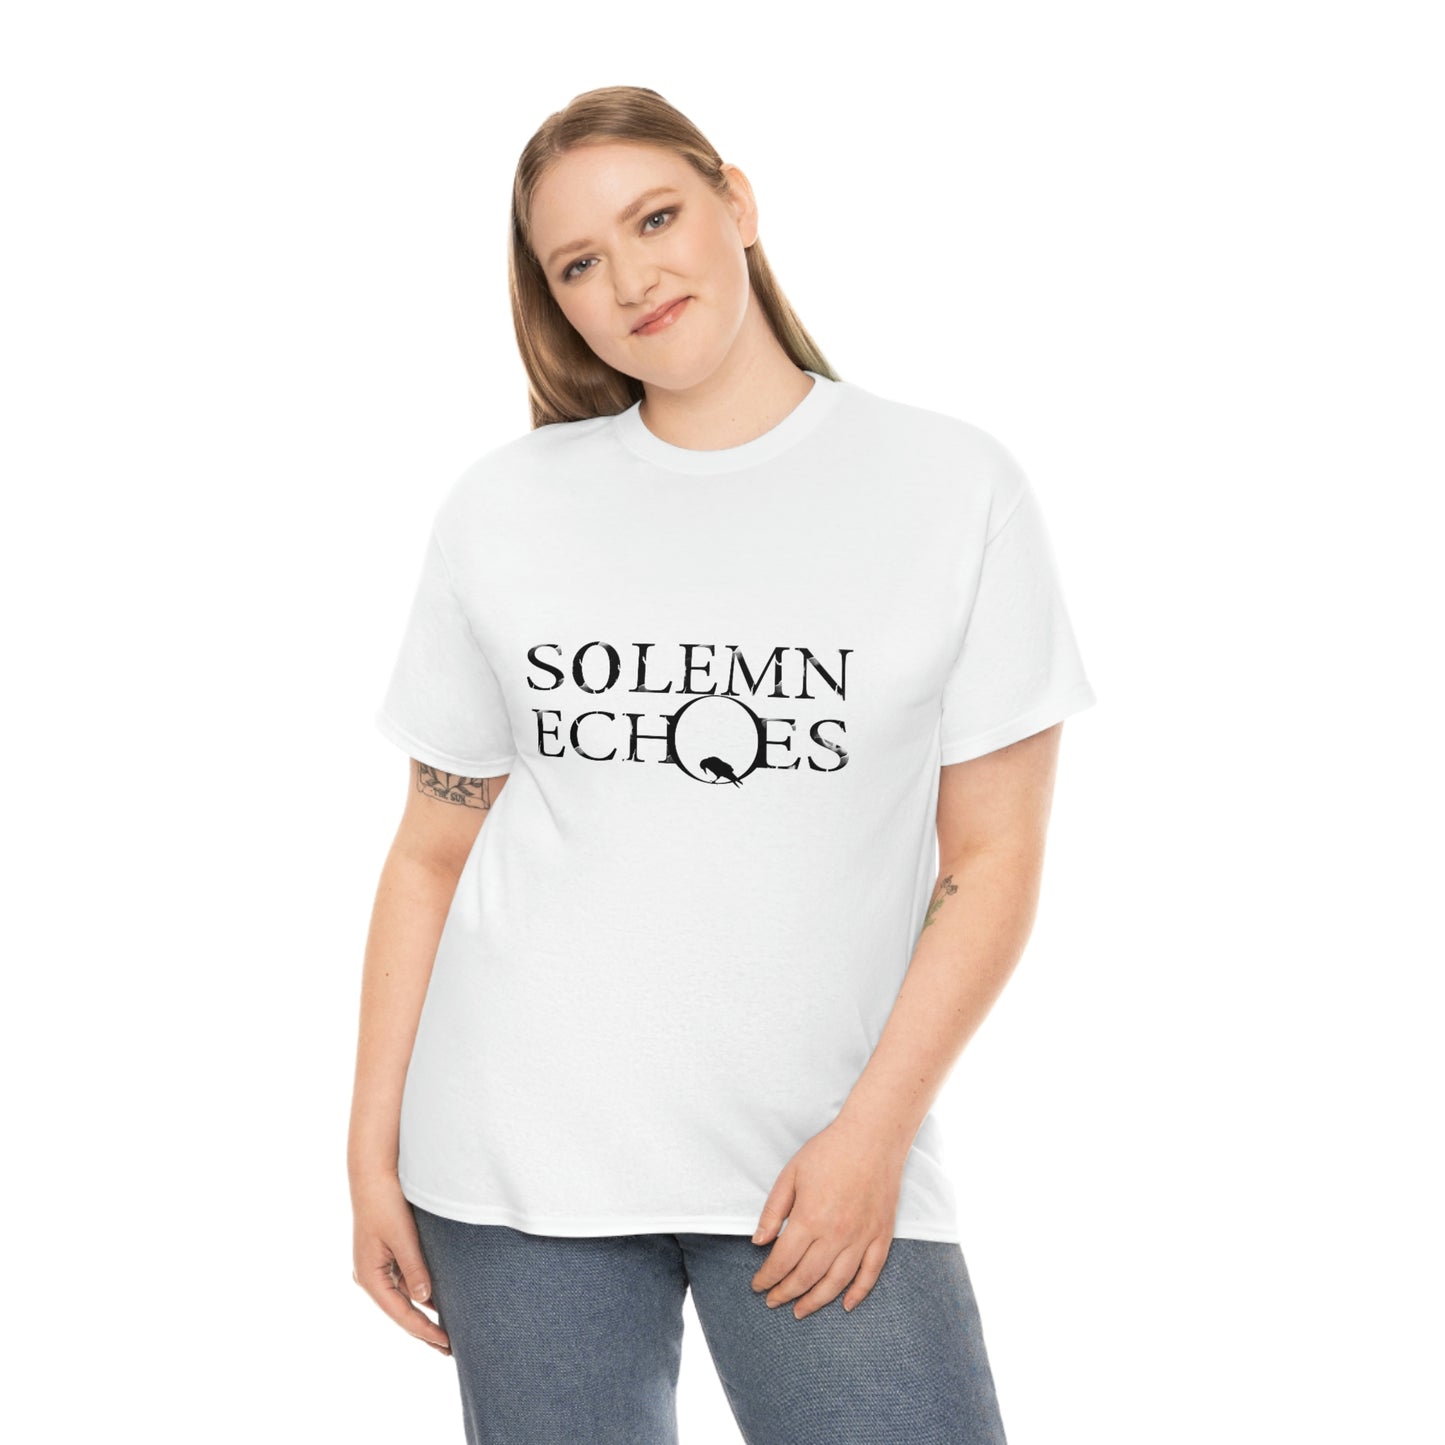 Solemn Echoes - Logo